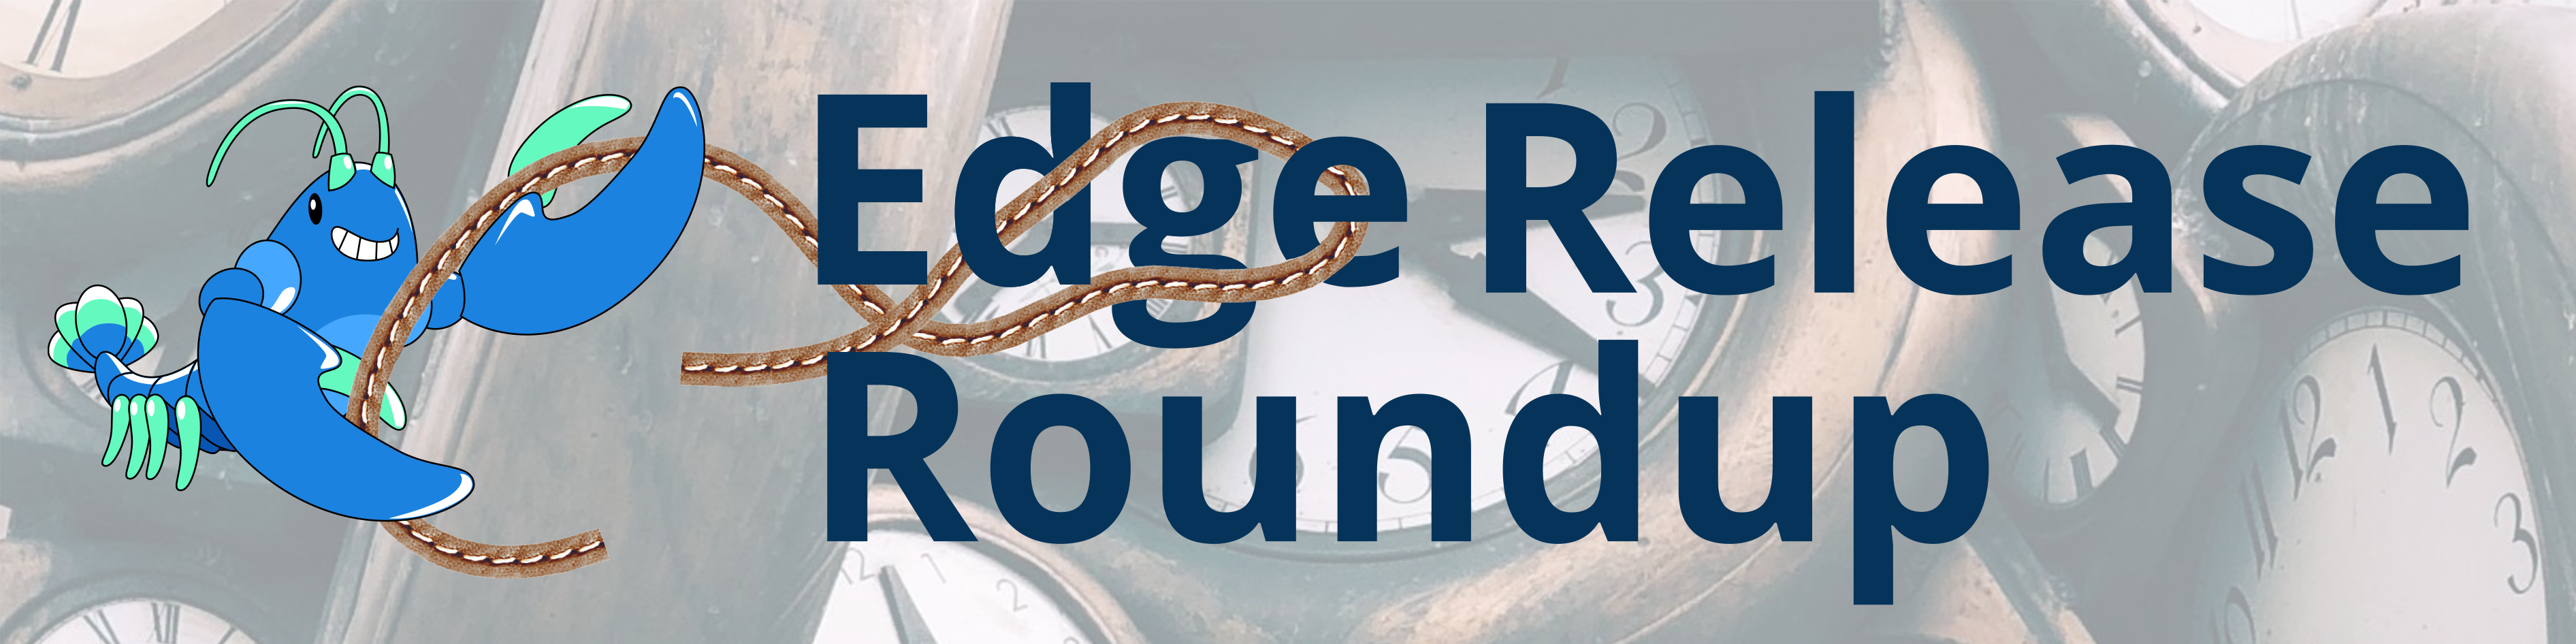 Edge Release Roundup